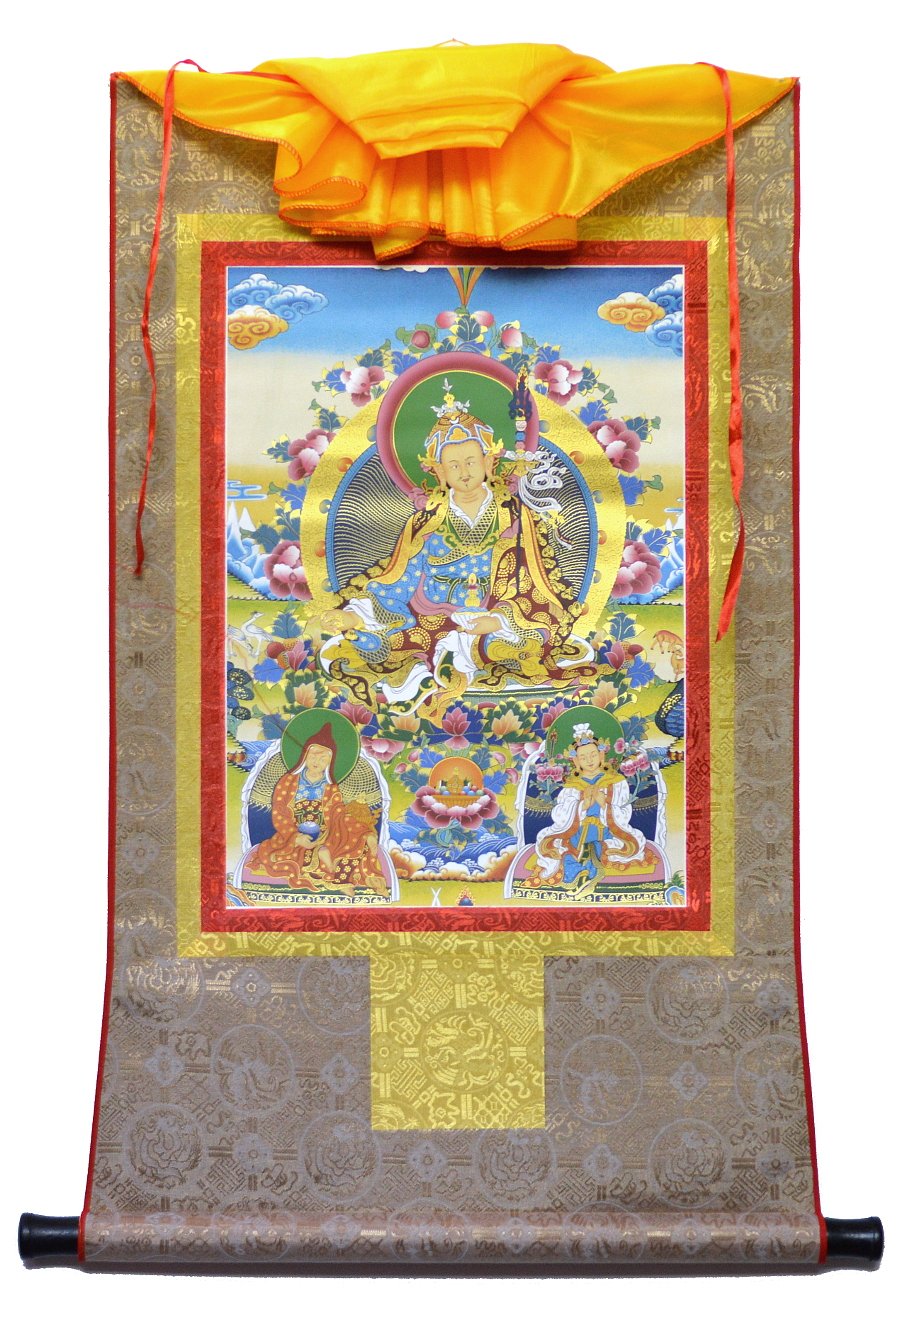 Тханка Гуру Падмасамбхава (печатная, тханка 51 х 82 см, изображение 32 х 45 см), 51 х 82 см, изображение: 32 х 45 см